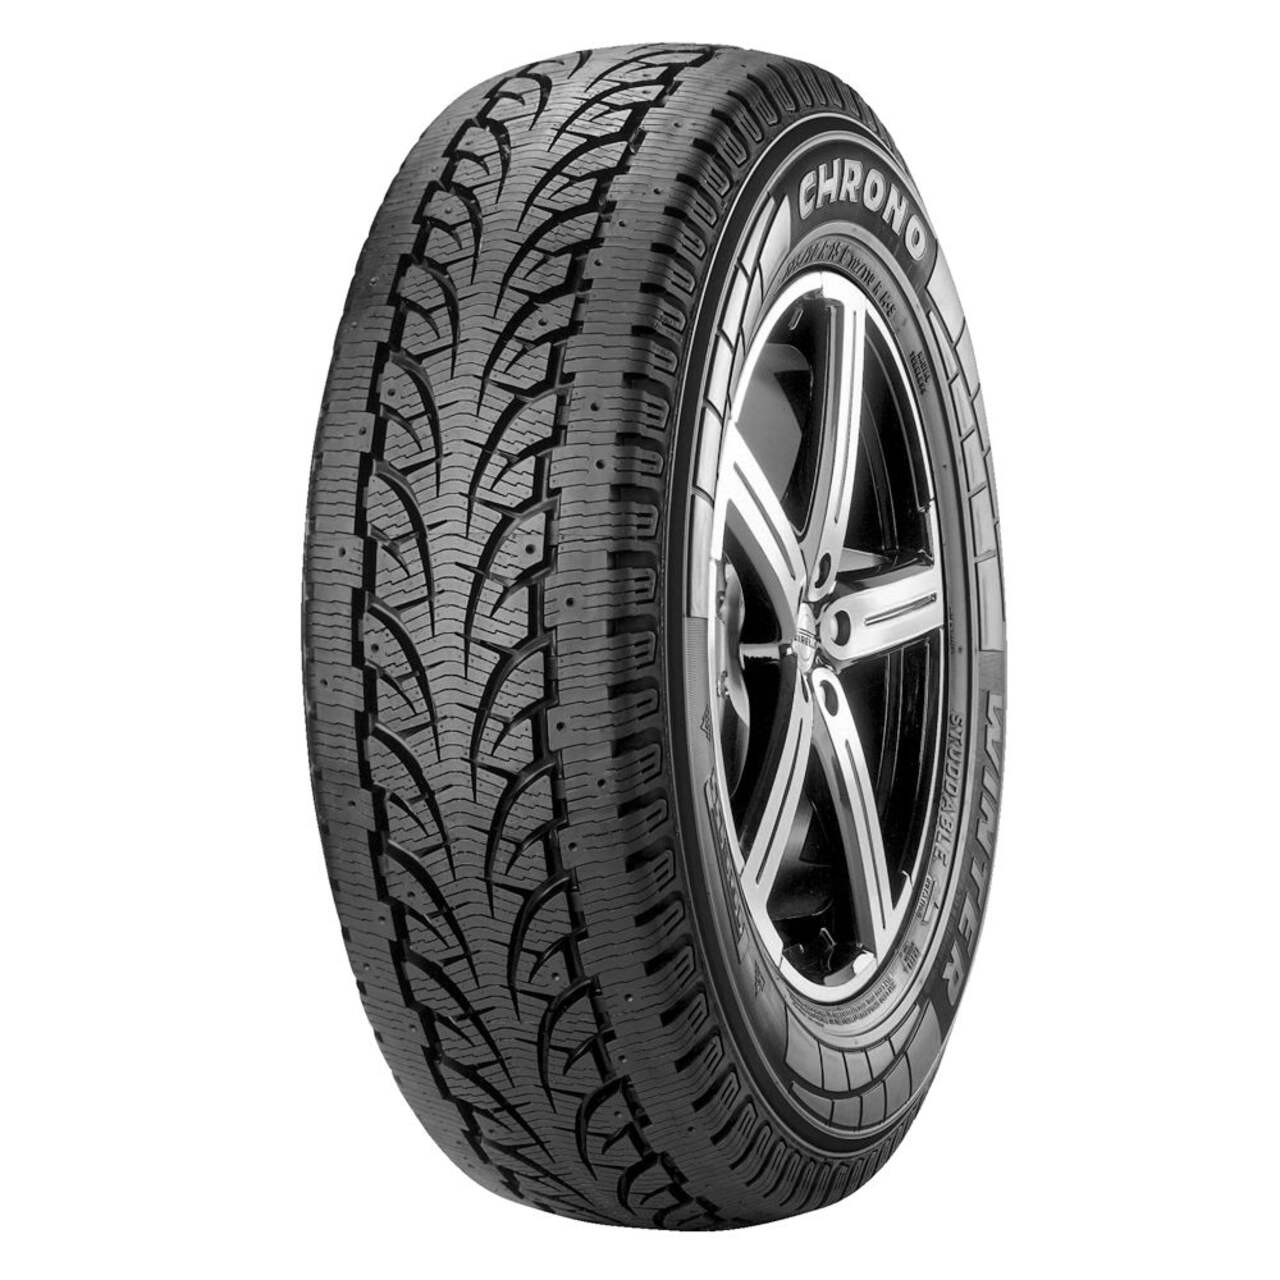 Pirelli Chrono Winter Tire For Truck & SUV